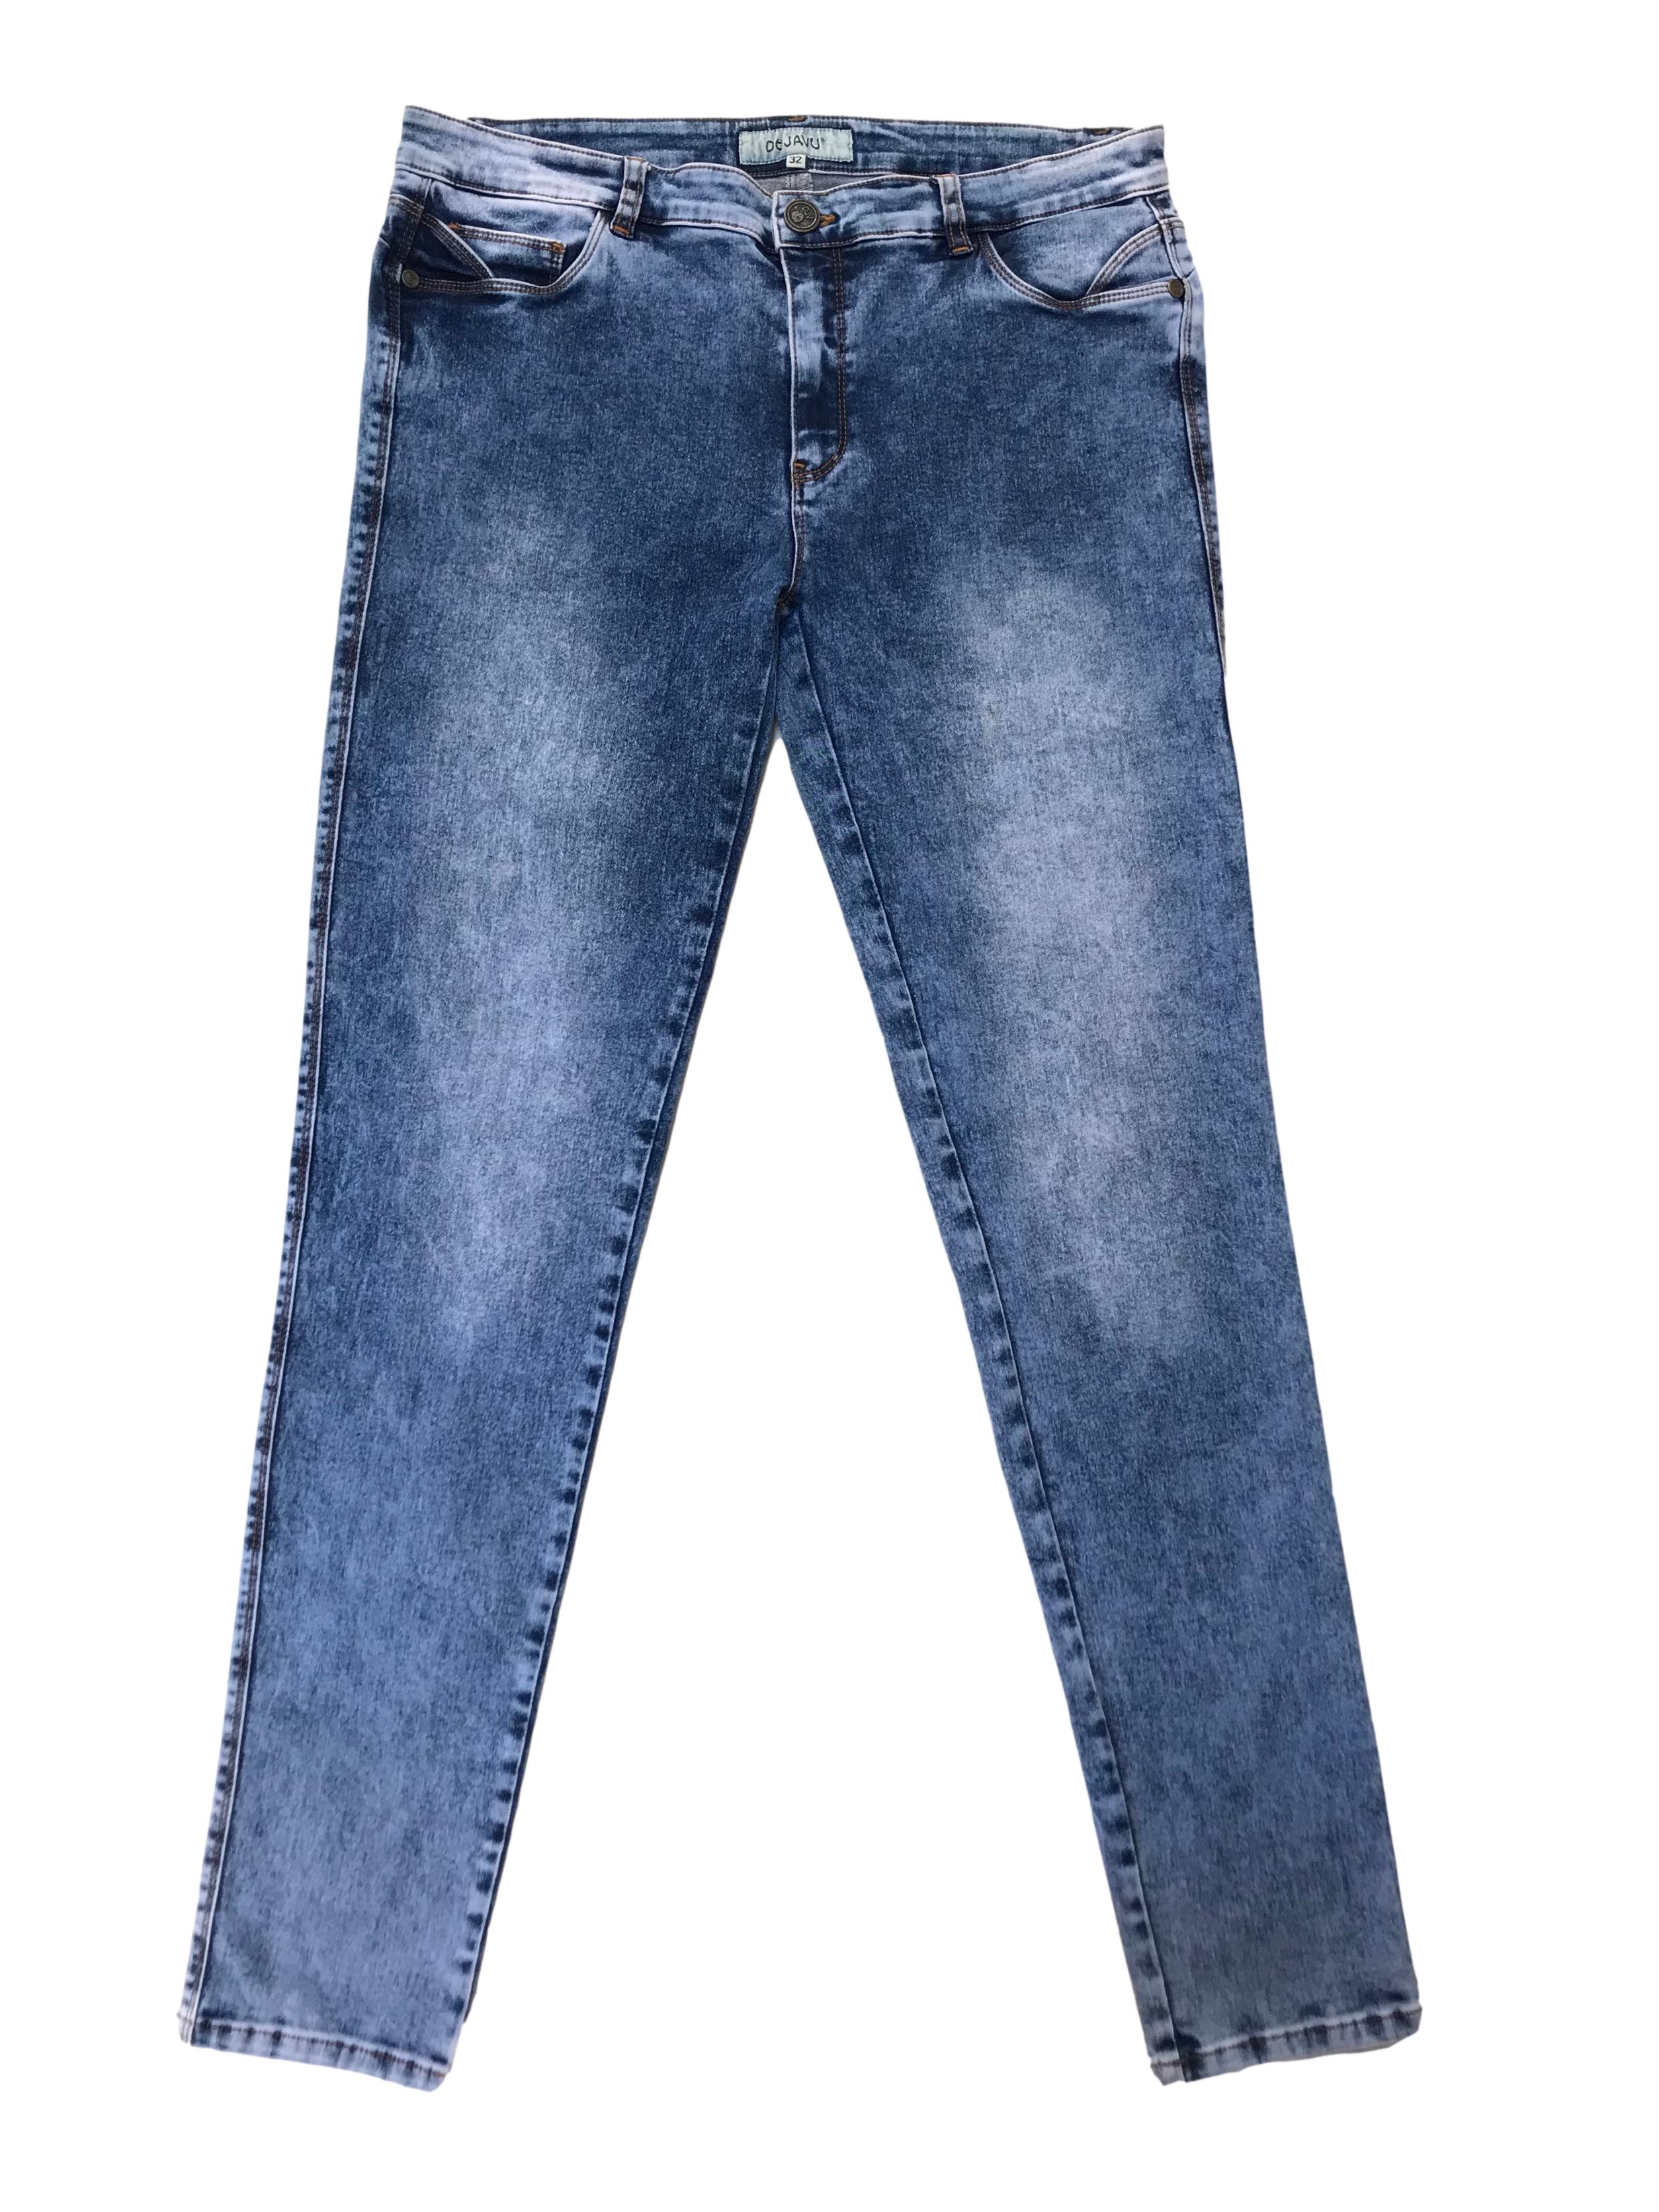 Pantalón jean stretch focalizado, con bolsilos laterales y traseros. Pretina 86cm